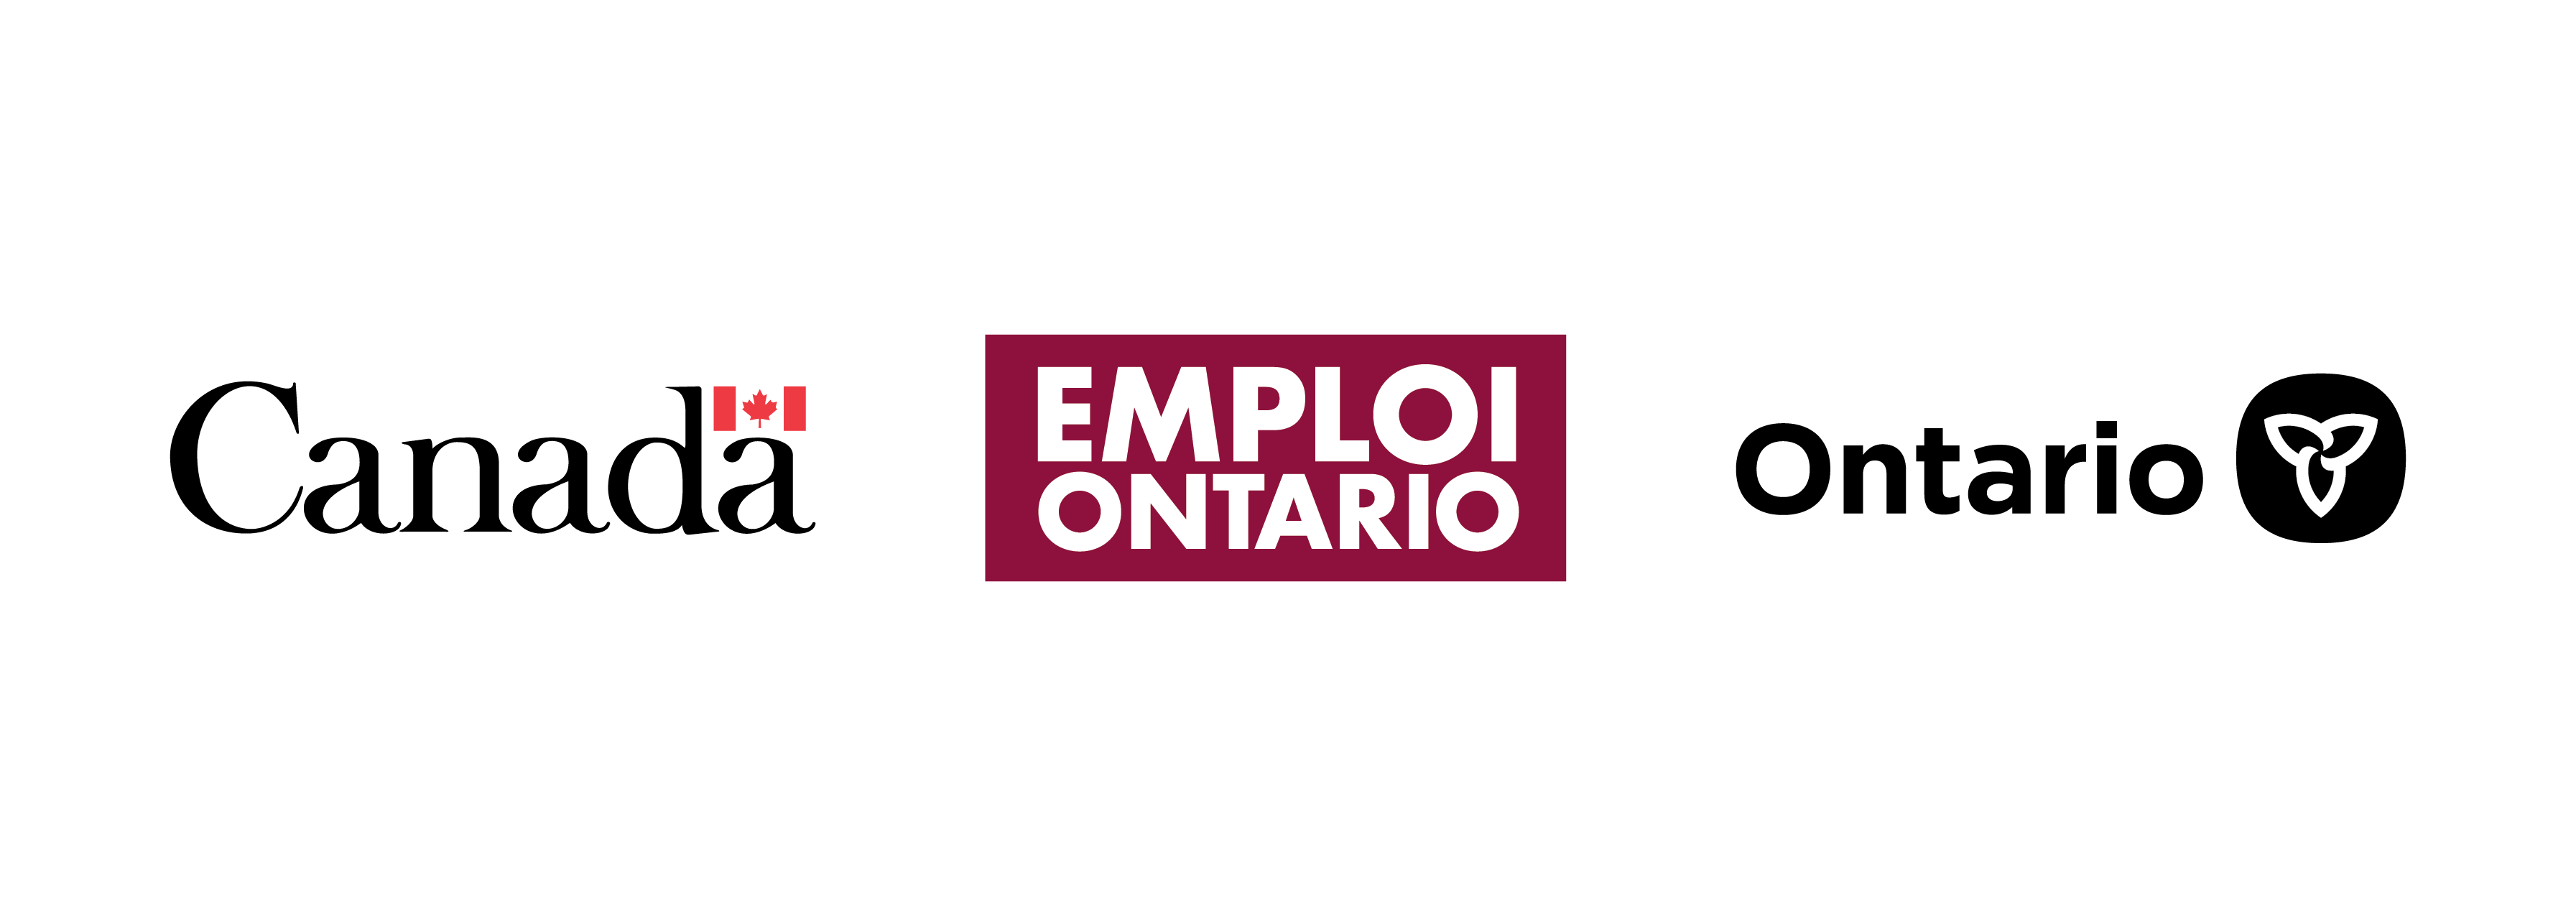 Canada - Emploi Ontario - Ontario